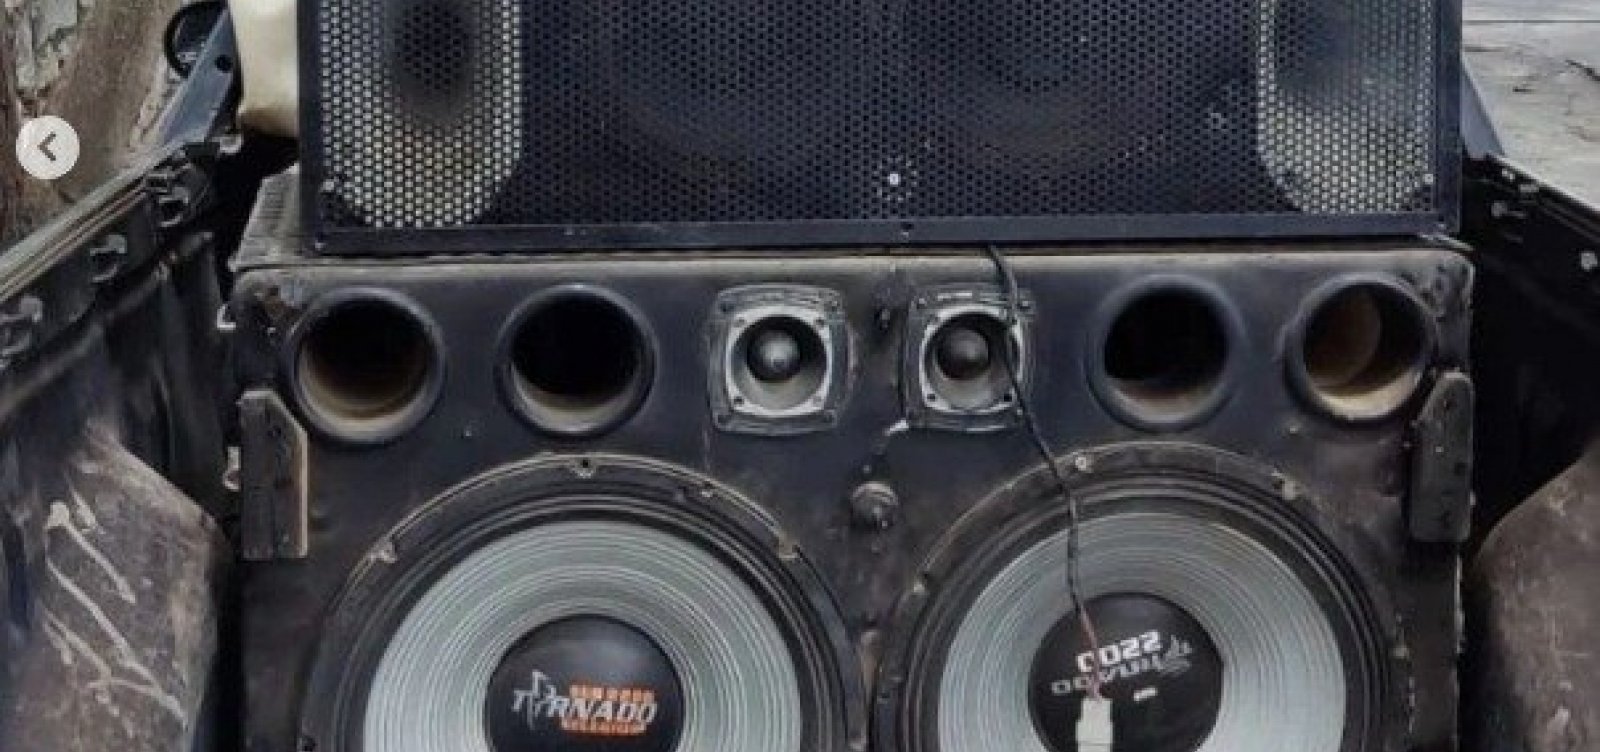 Sedur apreende 63 aparelhos de som no Carnaval, mas não 'encontrou' aglomerações